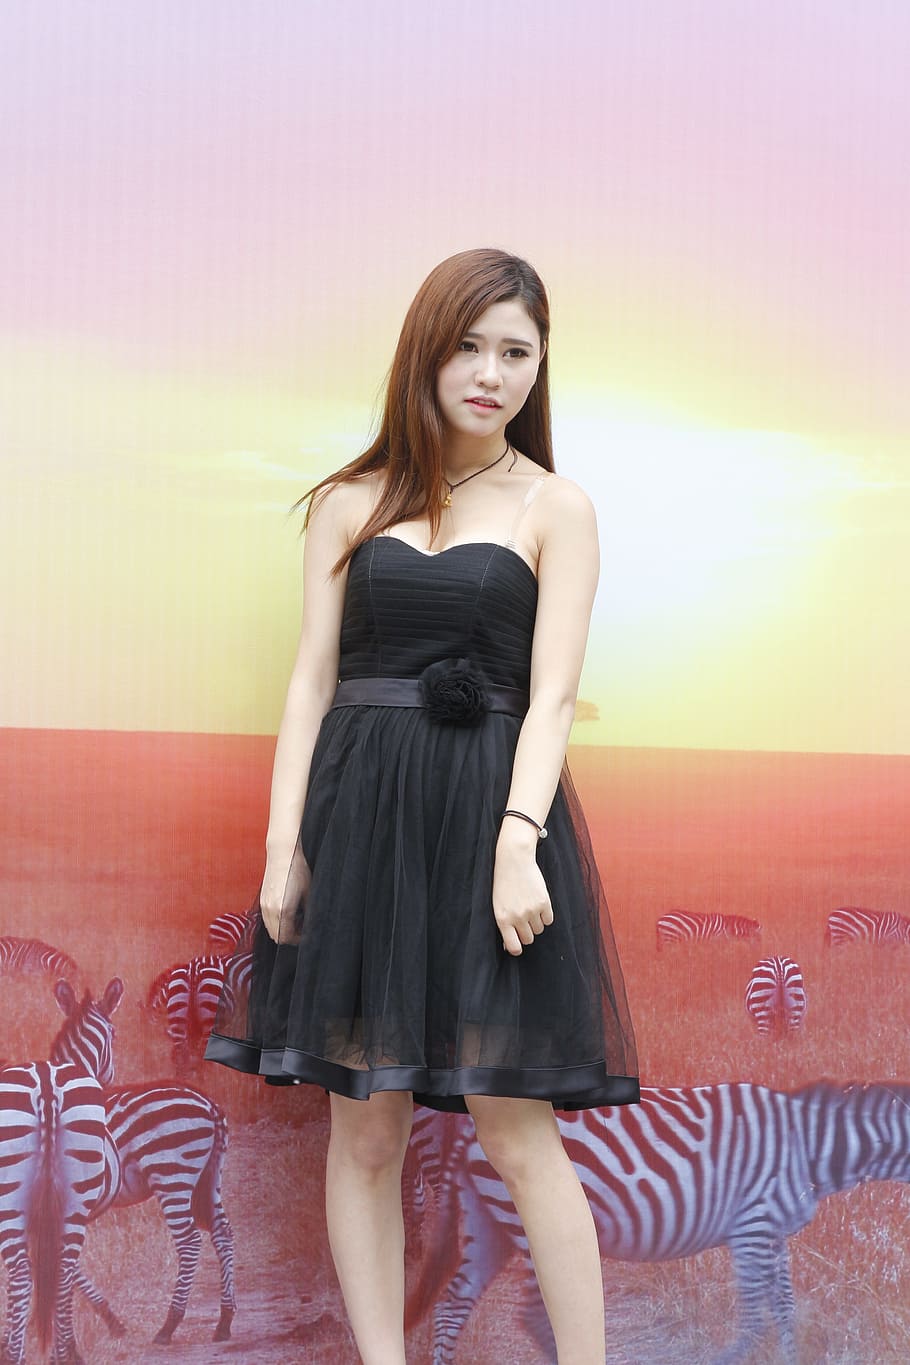 woman, wearing, black, sweetheart neckline mini dress, standing, wall, zebra, digital, wallpaper, woman in black